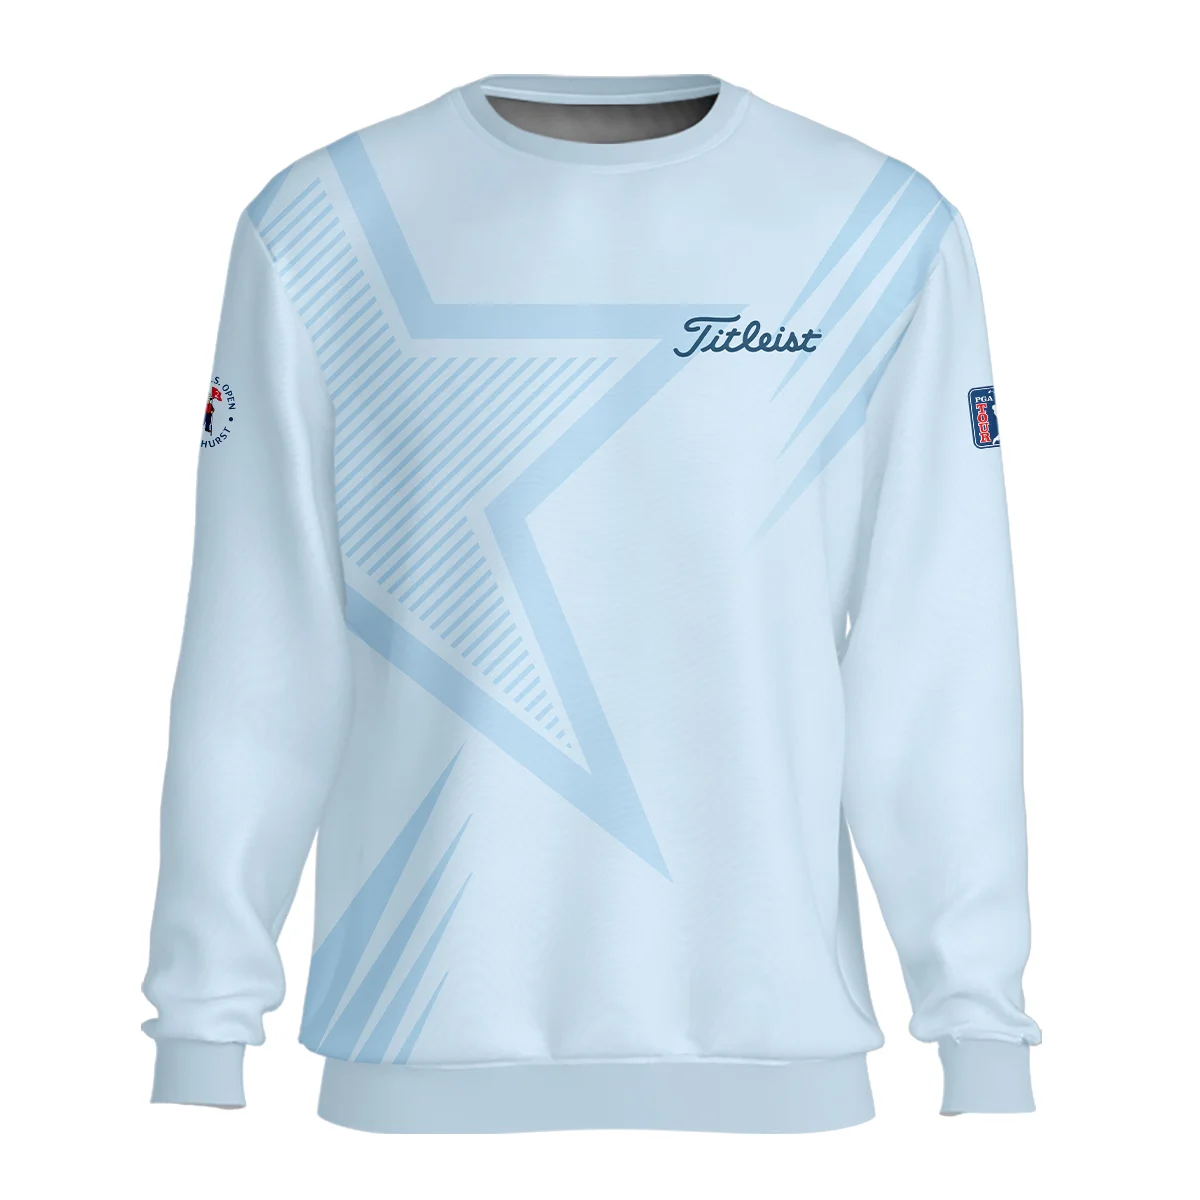 124th U.S. Open Pinehurst Golf Star Line Pattern Light Blue Titleist Zipper Polo Shirt Style Classic Zipper Polo Shirt For Men